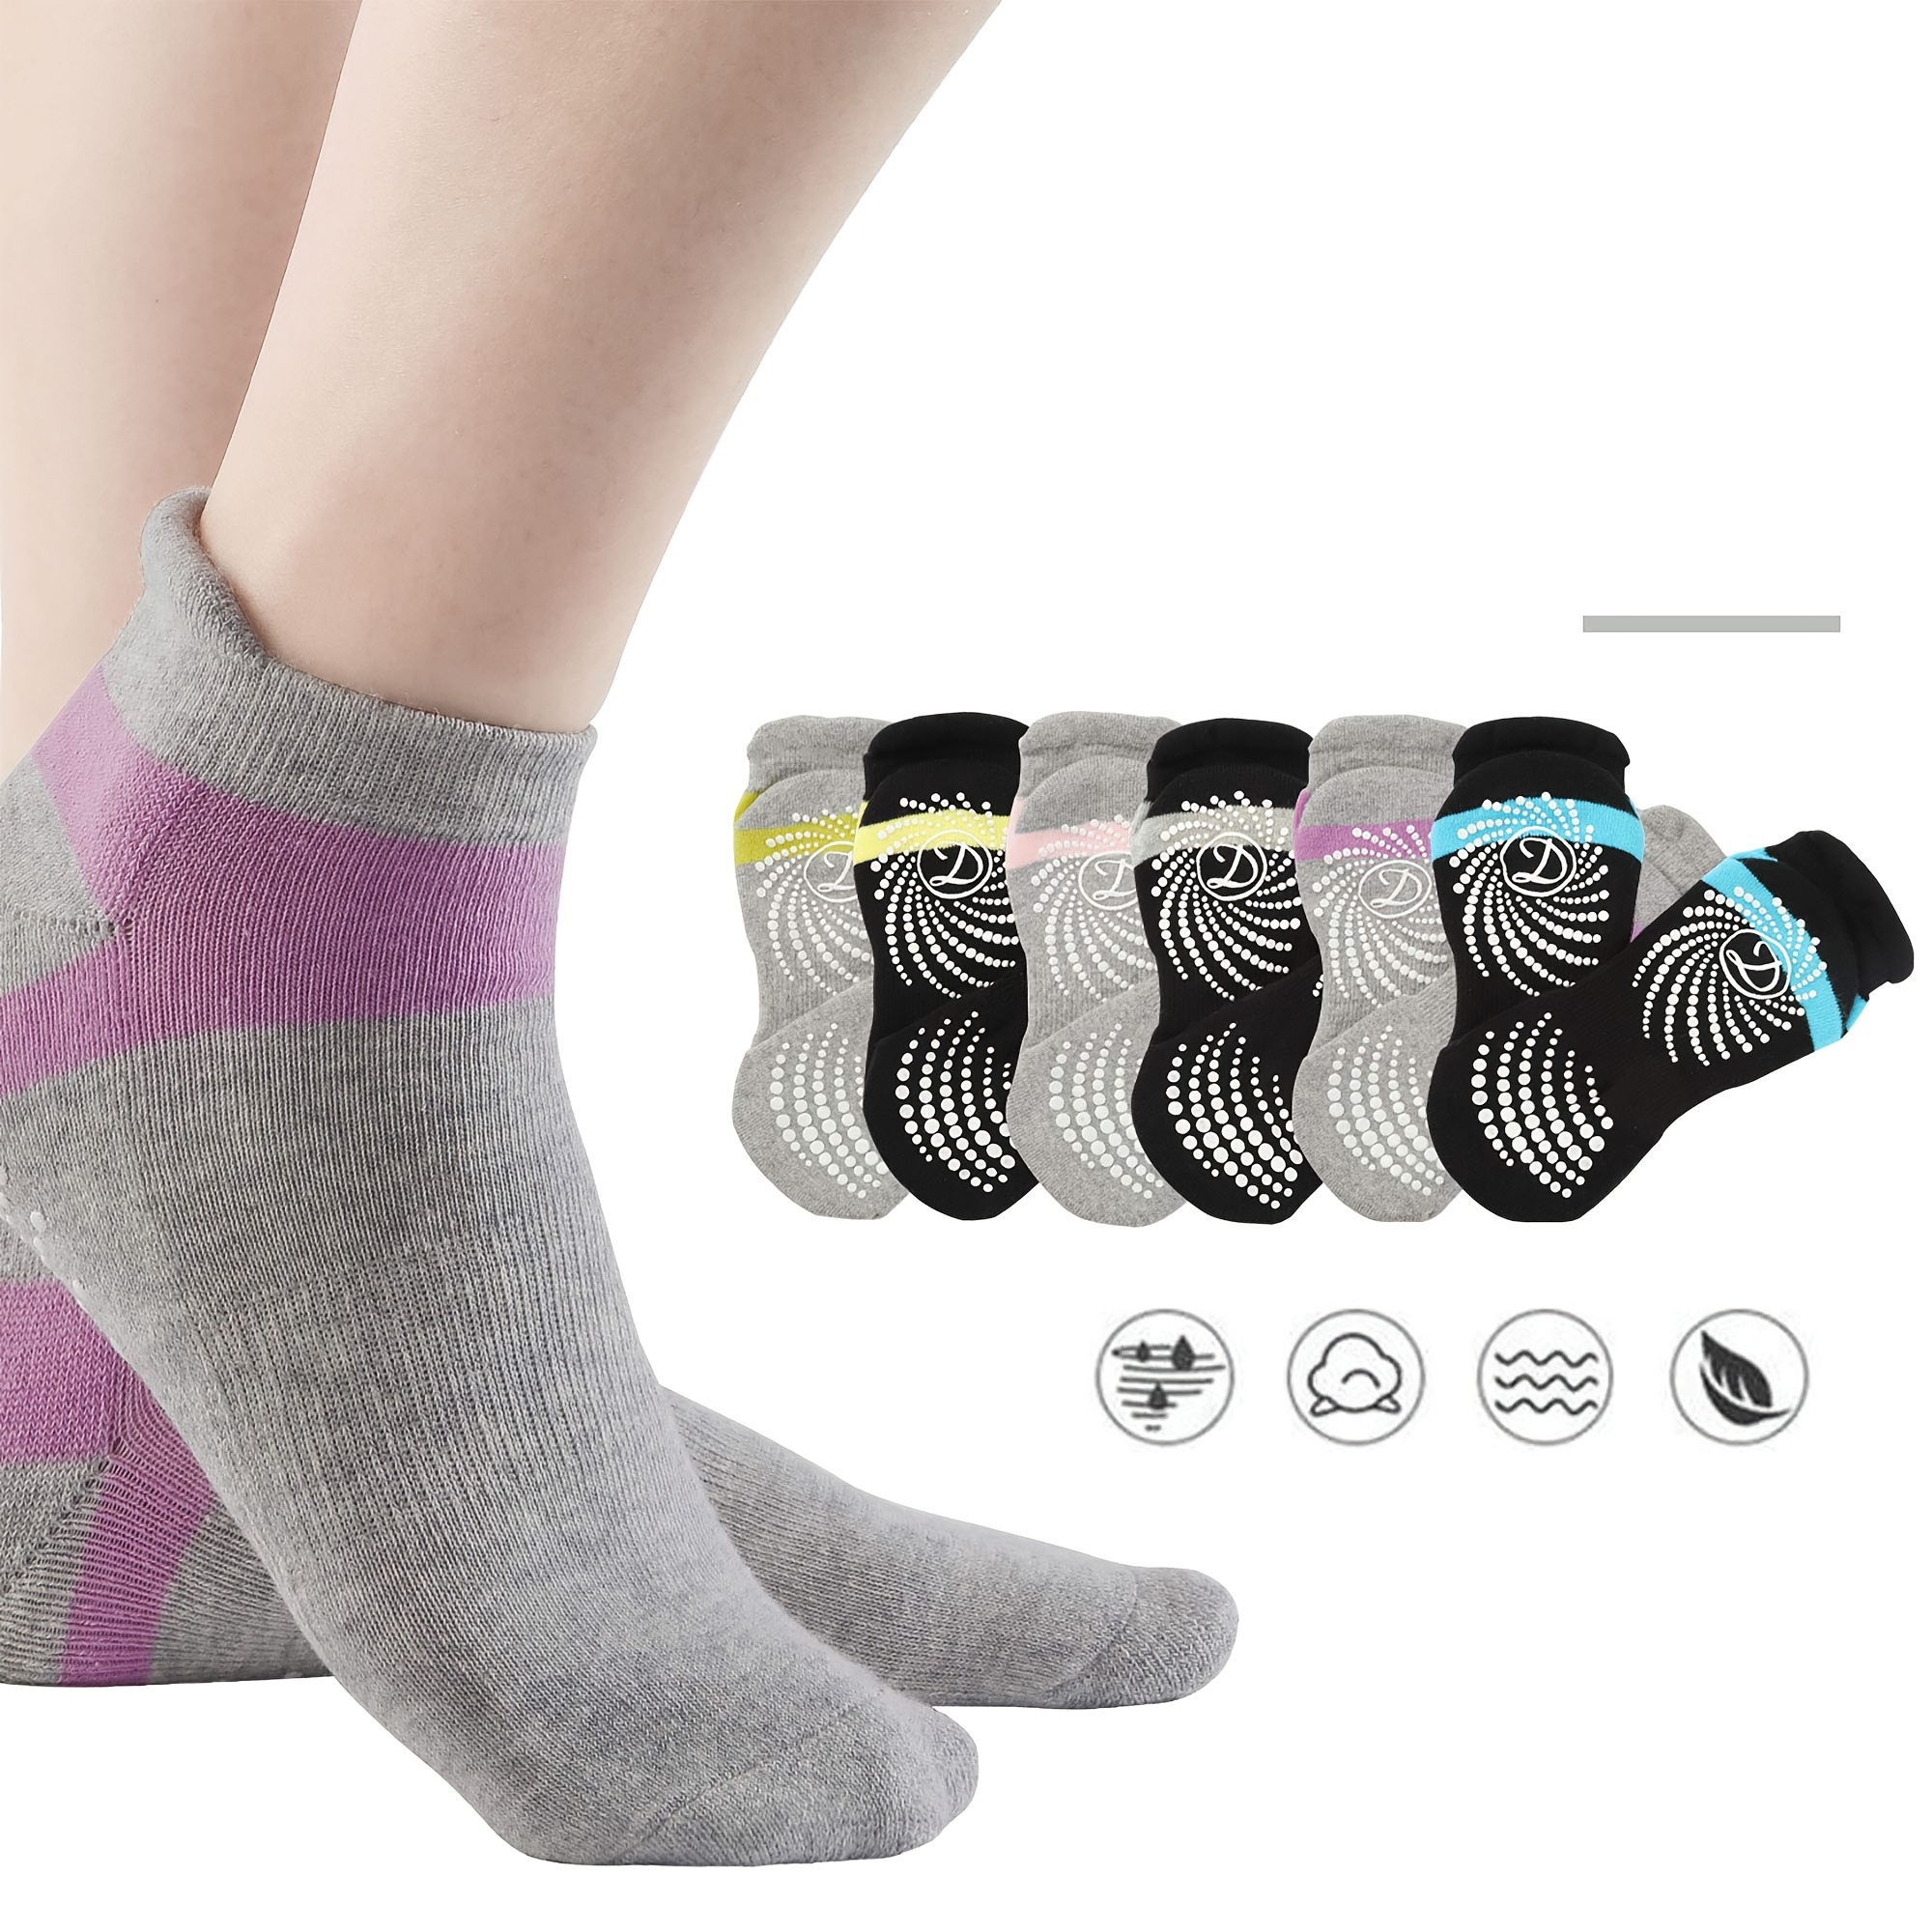 Trampoline socks Non Slip Yoga Socks with Grips Women Anti-Skid